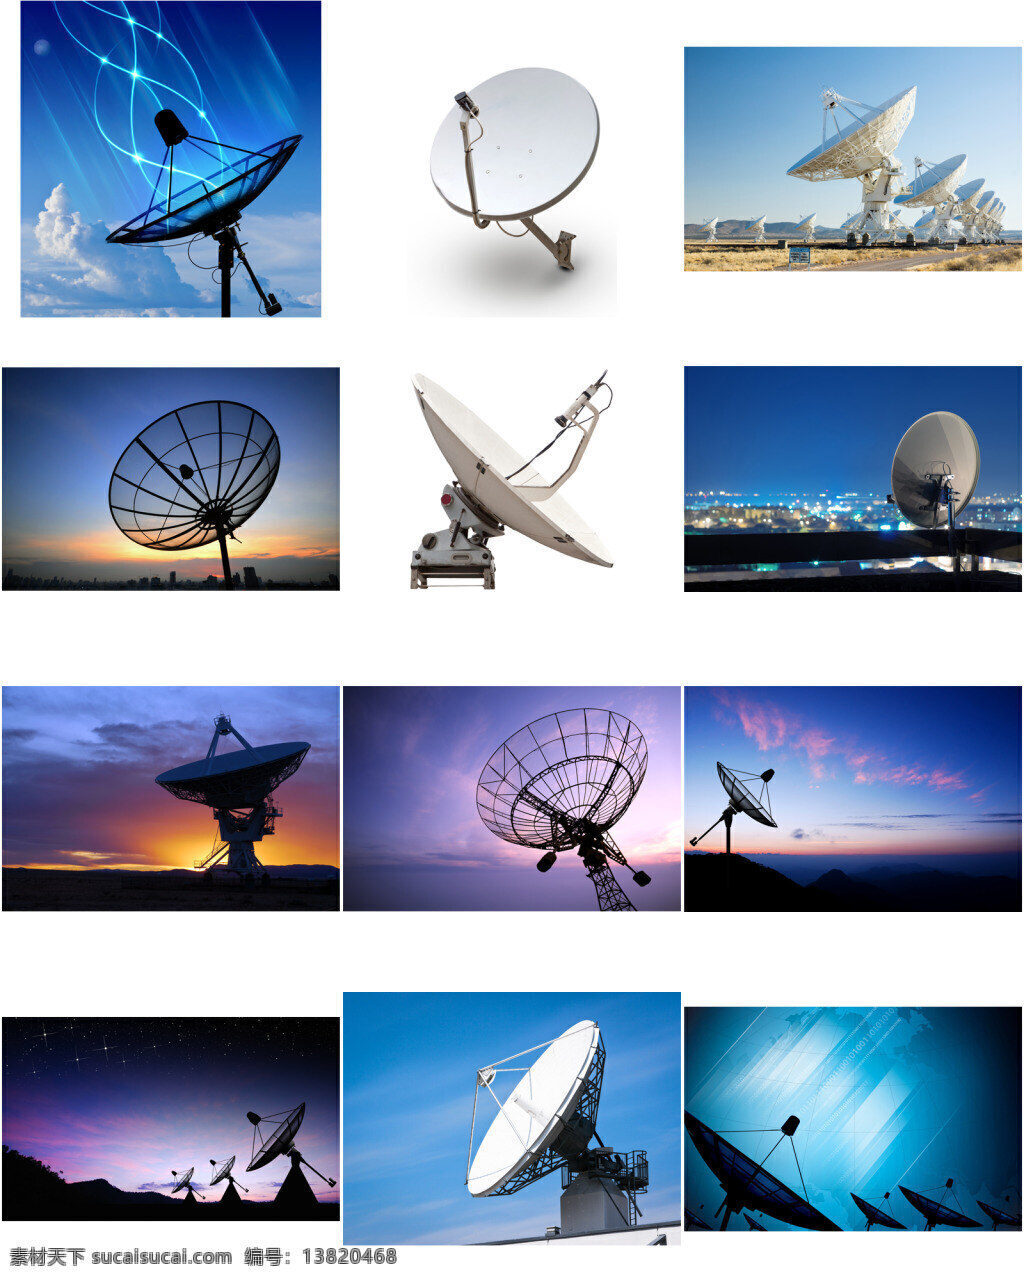 雷达 接收器 设备 城市夜景 黄昏傍晚 夕阳 科技 未来 卫星 天线 白色